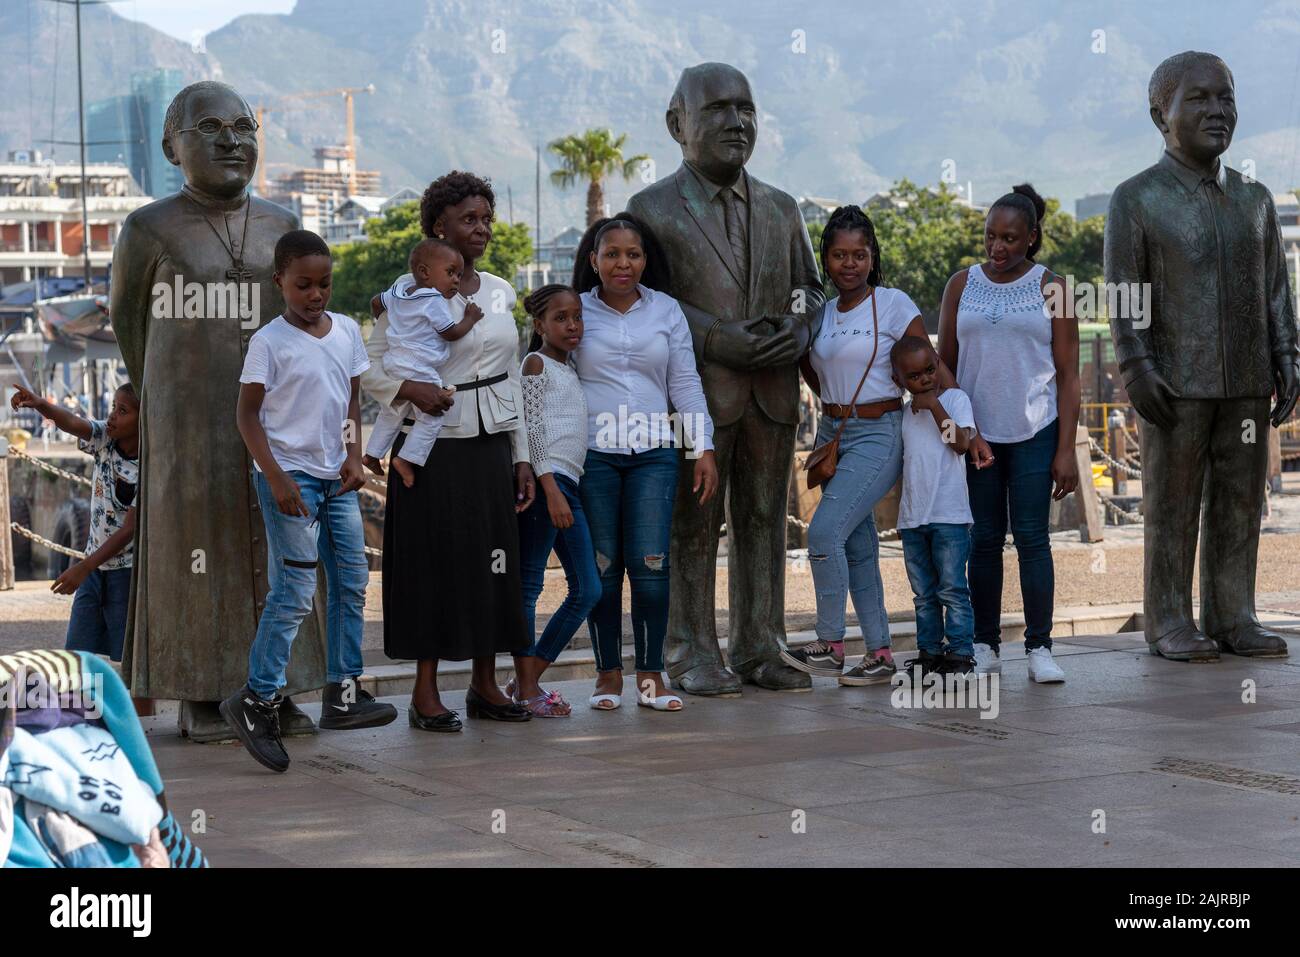 Waterfront, Cape Town, Afrique du Sud. Décembre 2019. Les membres de la famille lors d'une visite à Cape Town Waterfront area posent avec trois grands sud-africains. Banque D'Images